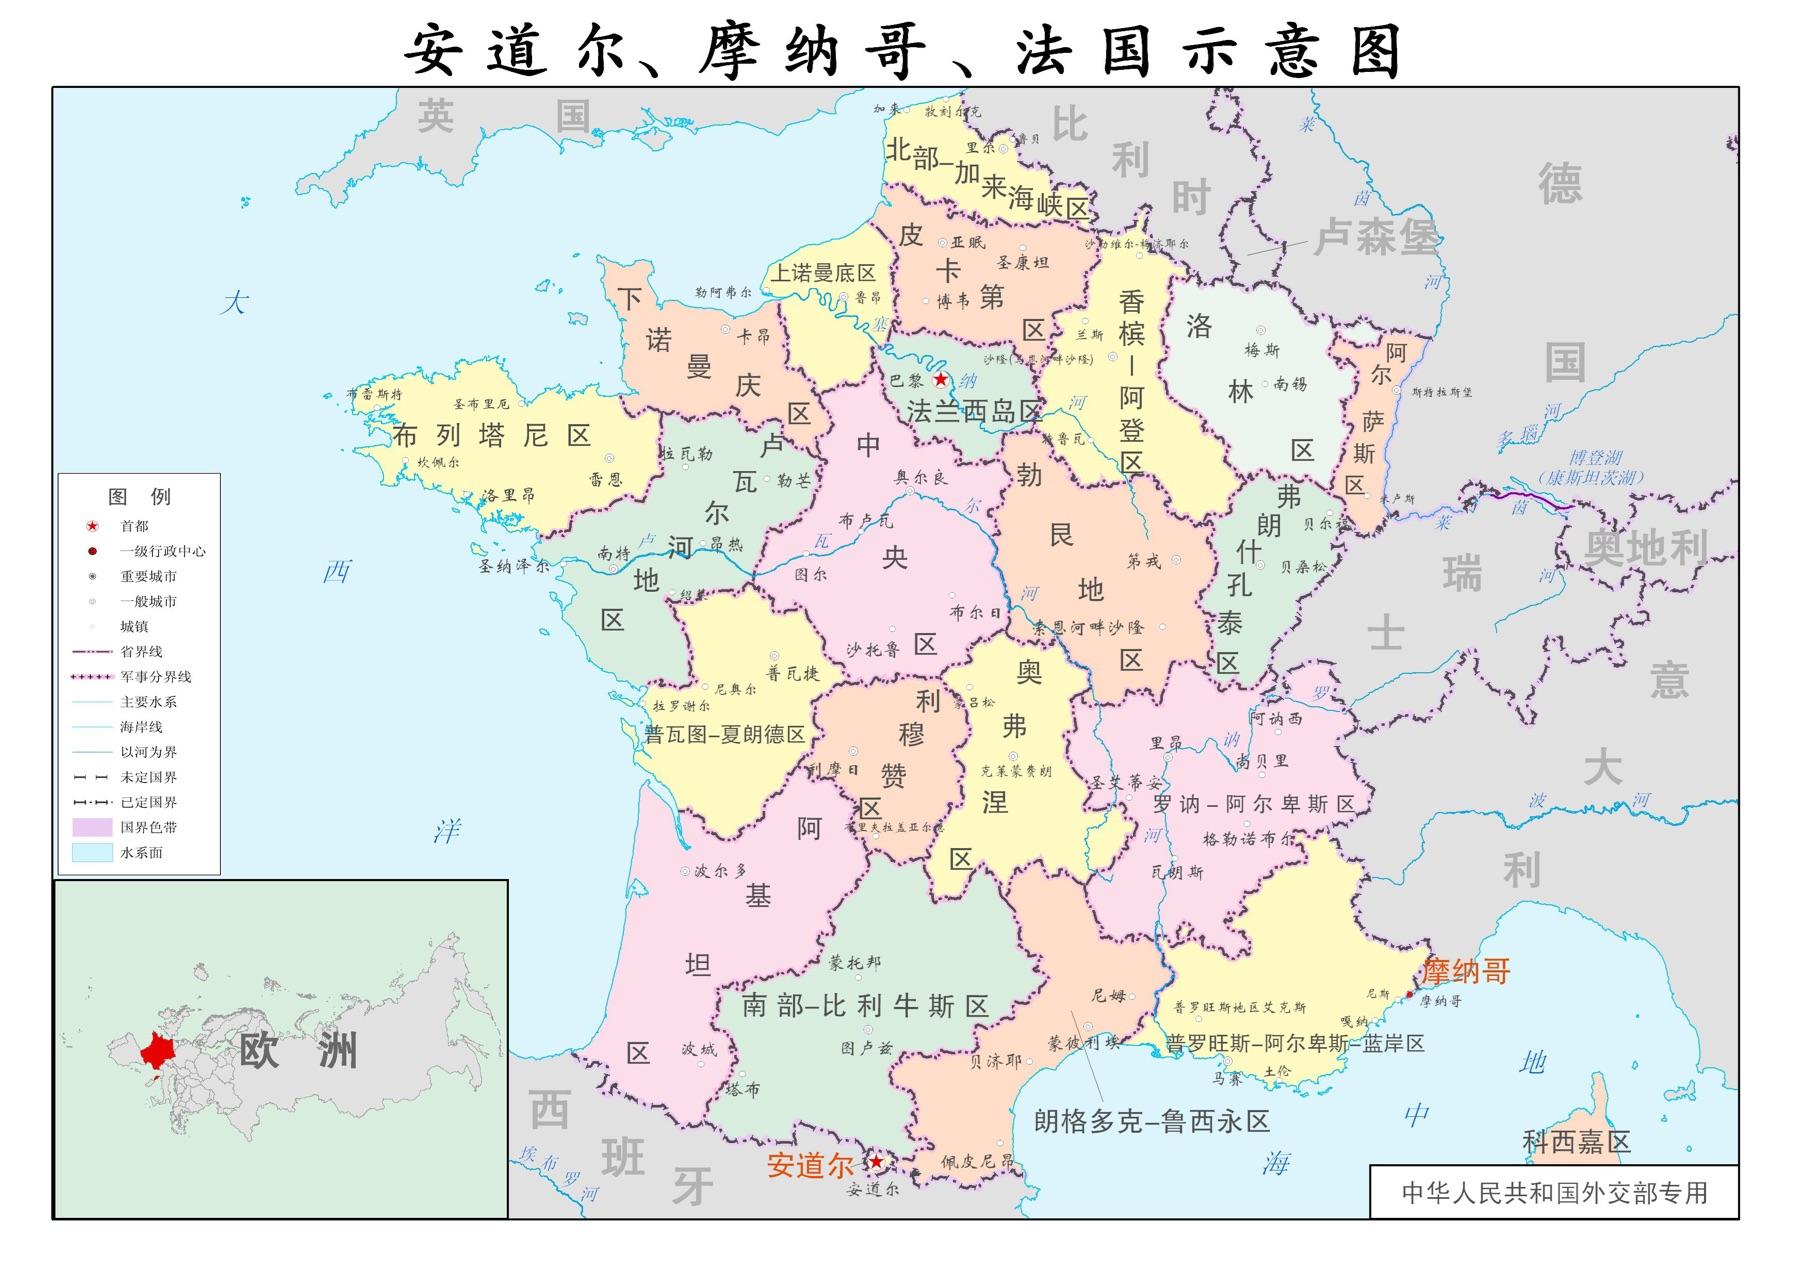 法国地形地貌图 - 知乎